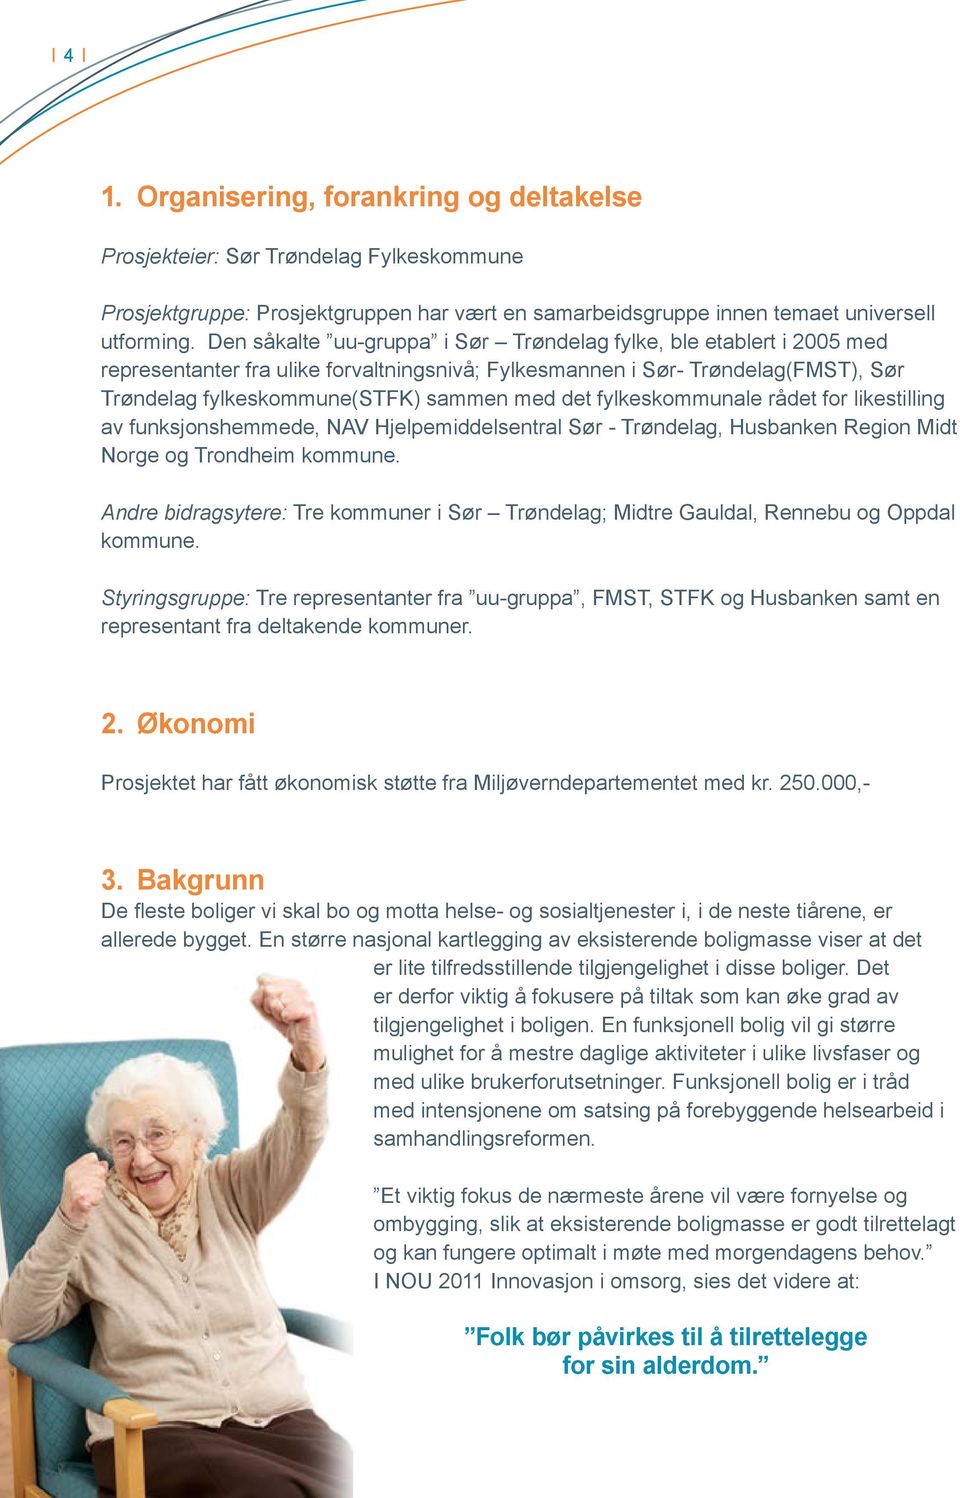 fylkeskommunale rådet for likestilling av funksjonshemmede, NAV Hjelpemiddelsentral Sør - Trøndelag, Husbanken Region Midt Norge og Trondheim kommune.